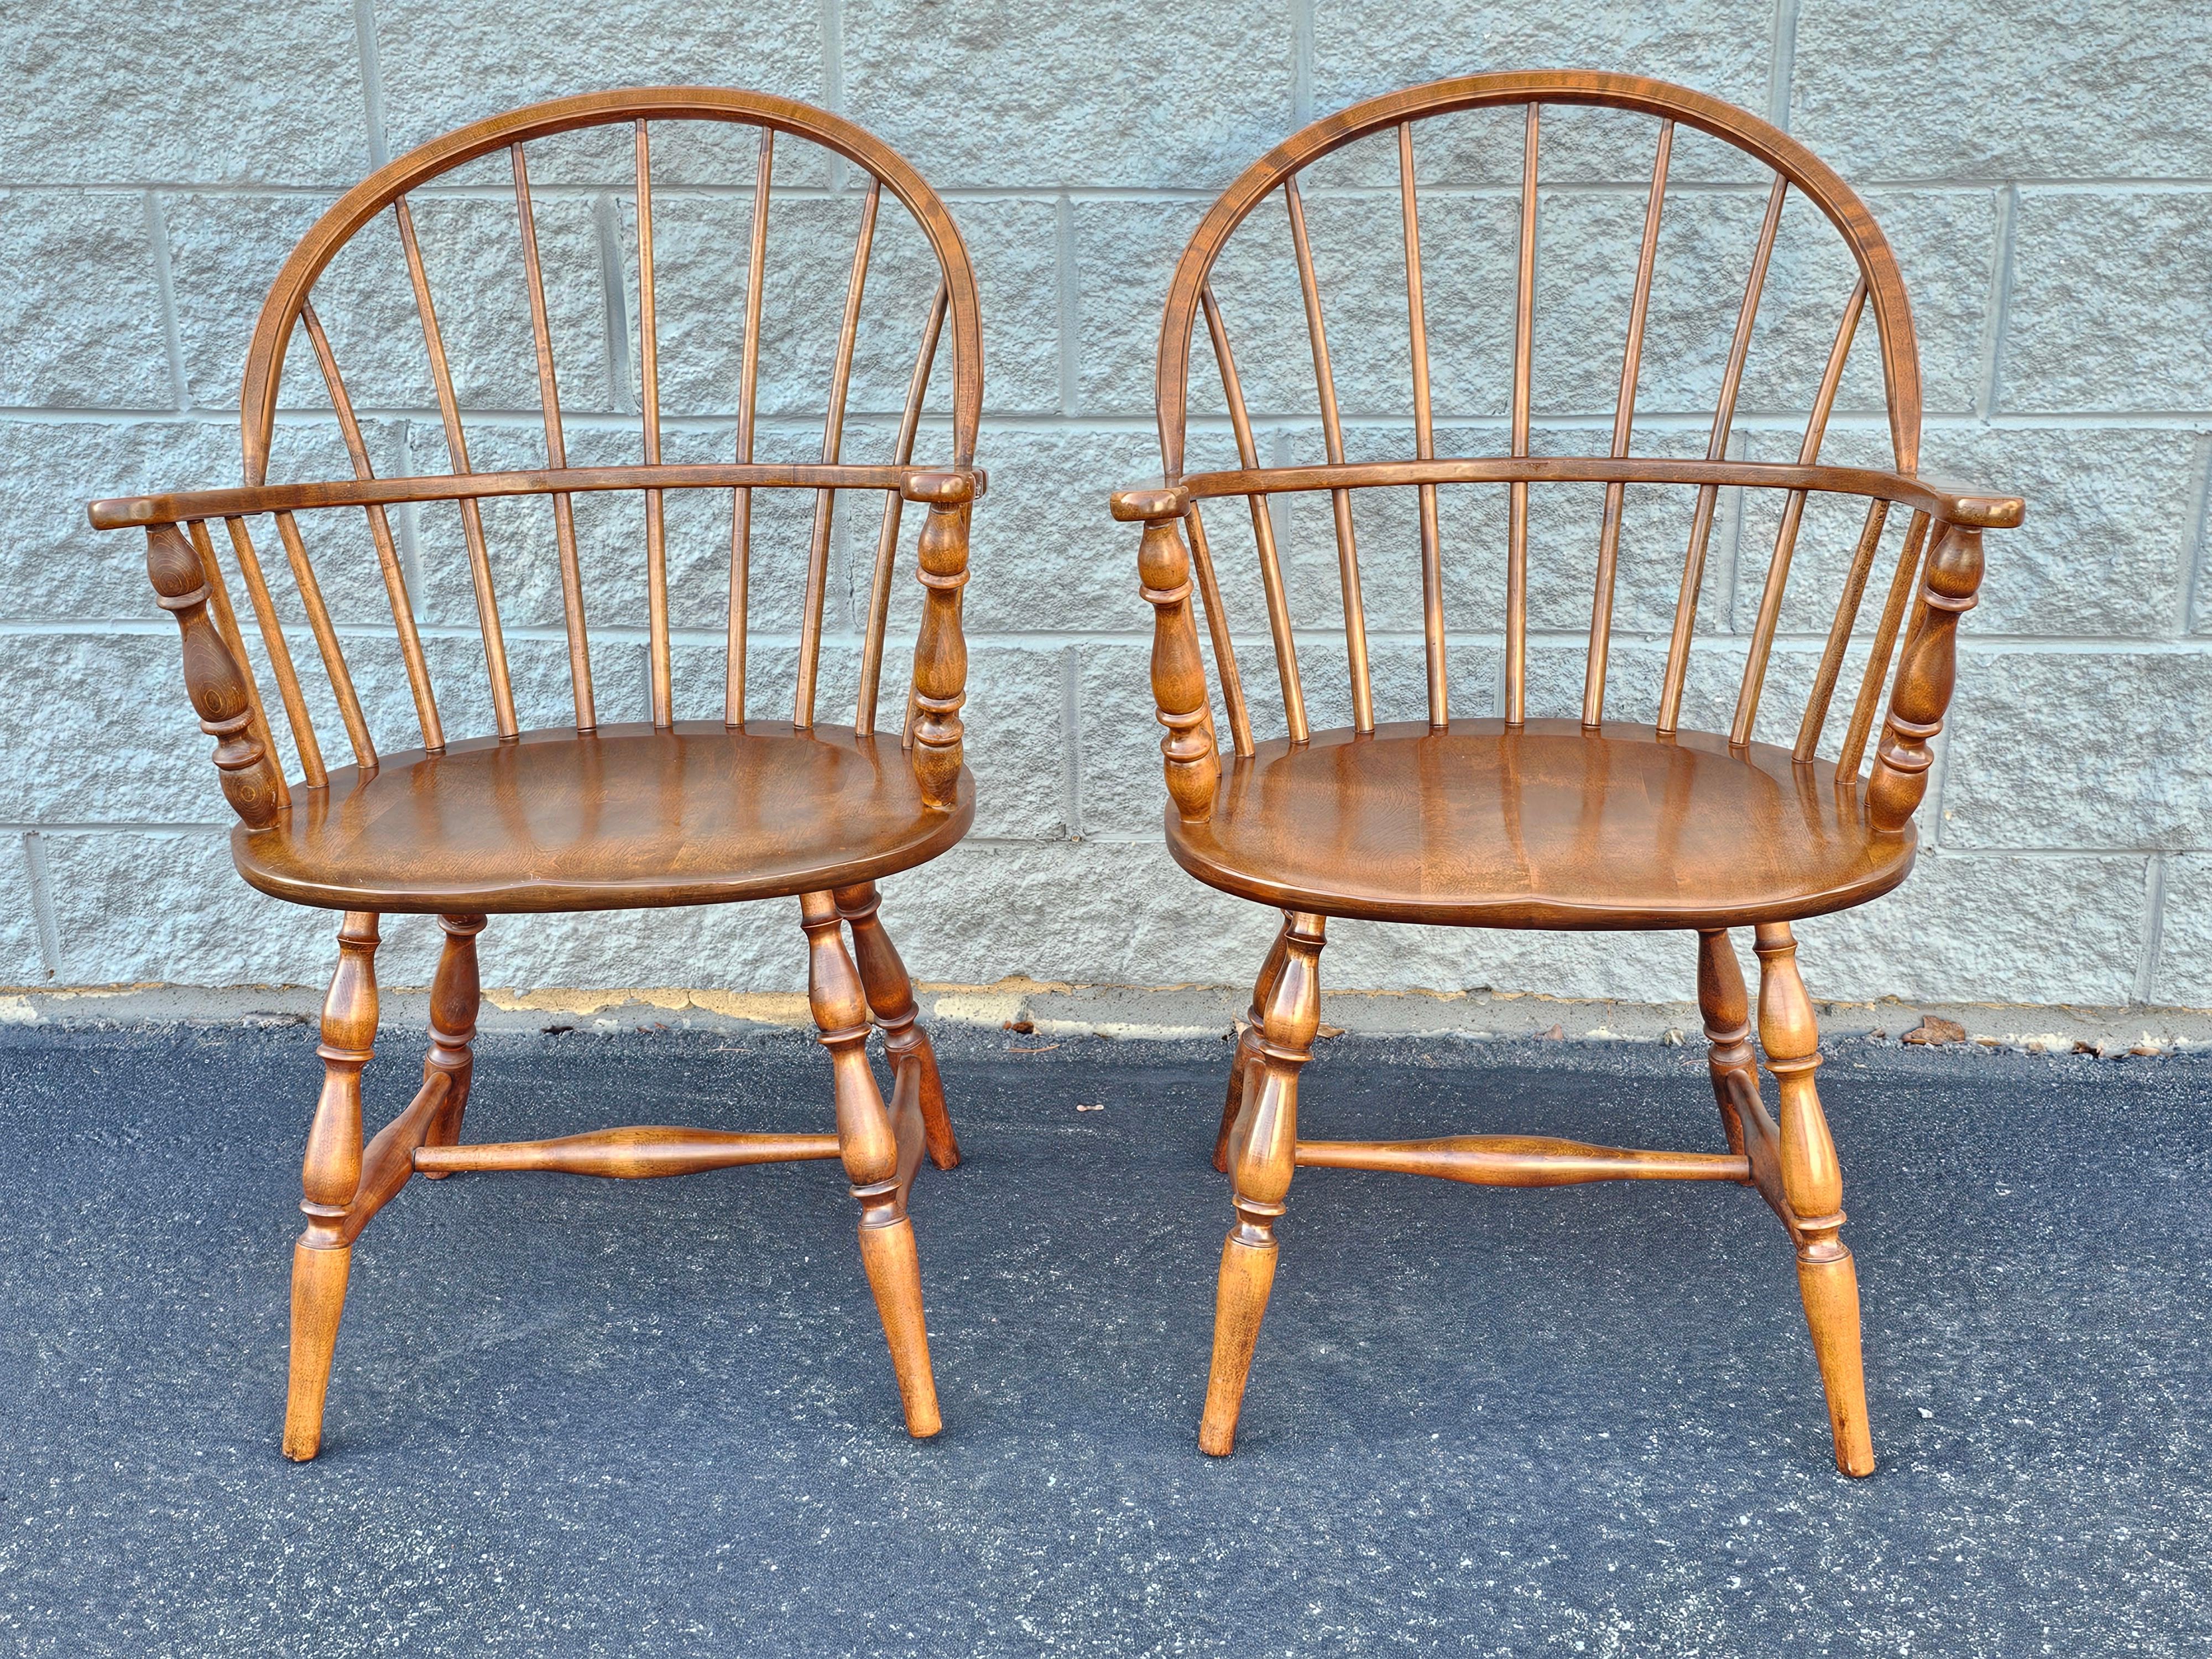 Ensemble de quatre fauteuils Windsor à dossier arrondi en érable anglais, fabriqués à la main par les artisans Amish en Pennsylvanie au milieu du 20e siècle. Les chaises ont été récemment remises à neuf  et sont magnifiques. Mesure 23,25